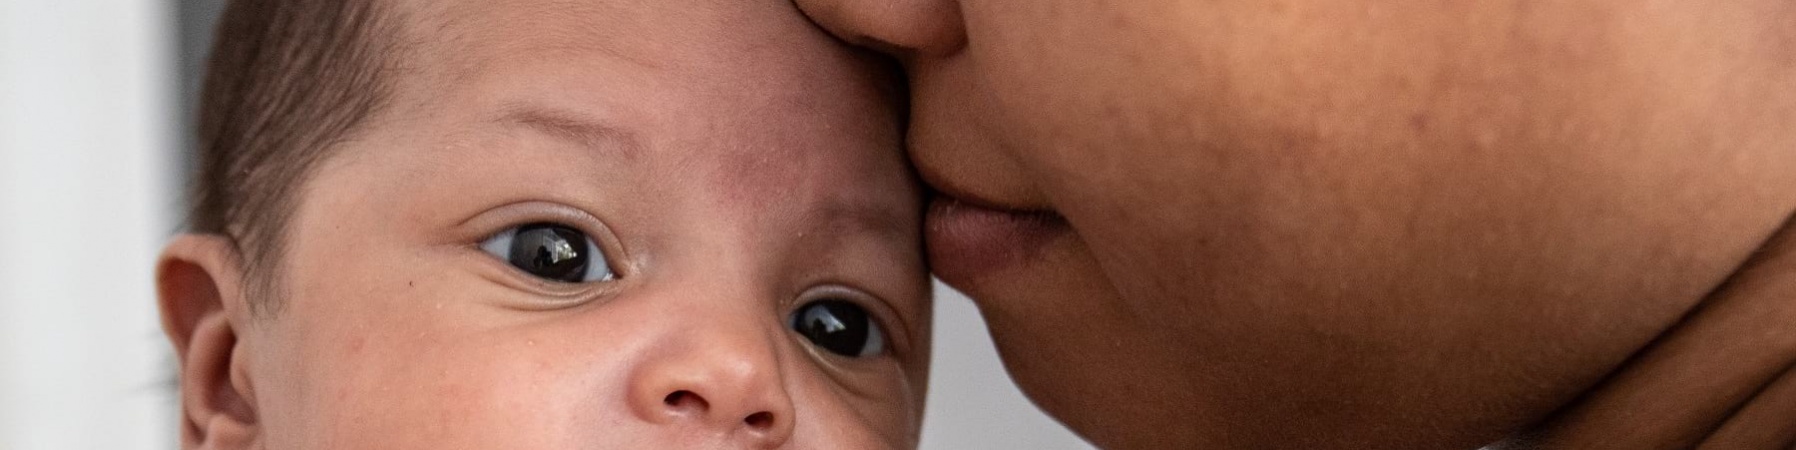 primo piano di un neonato in braccio alla madre che gli bacia la fronte